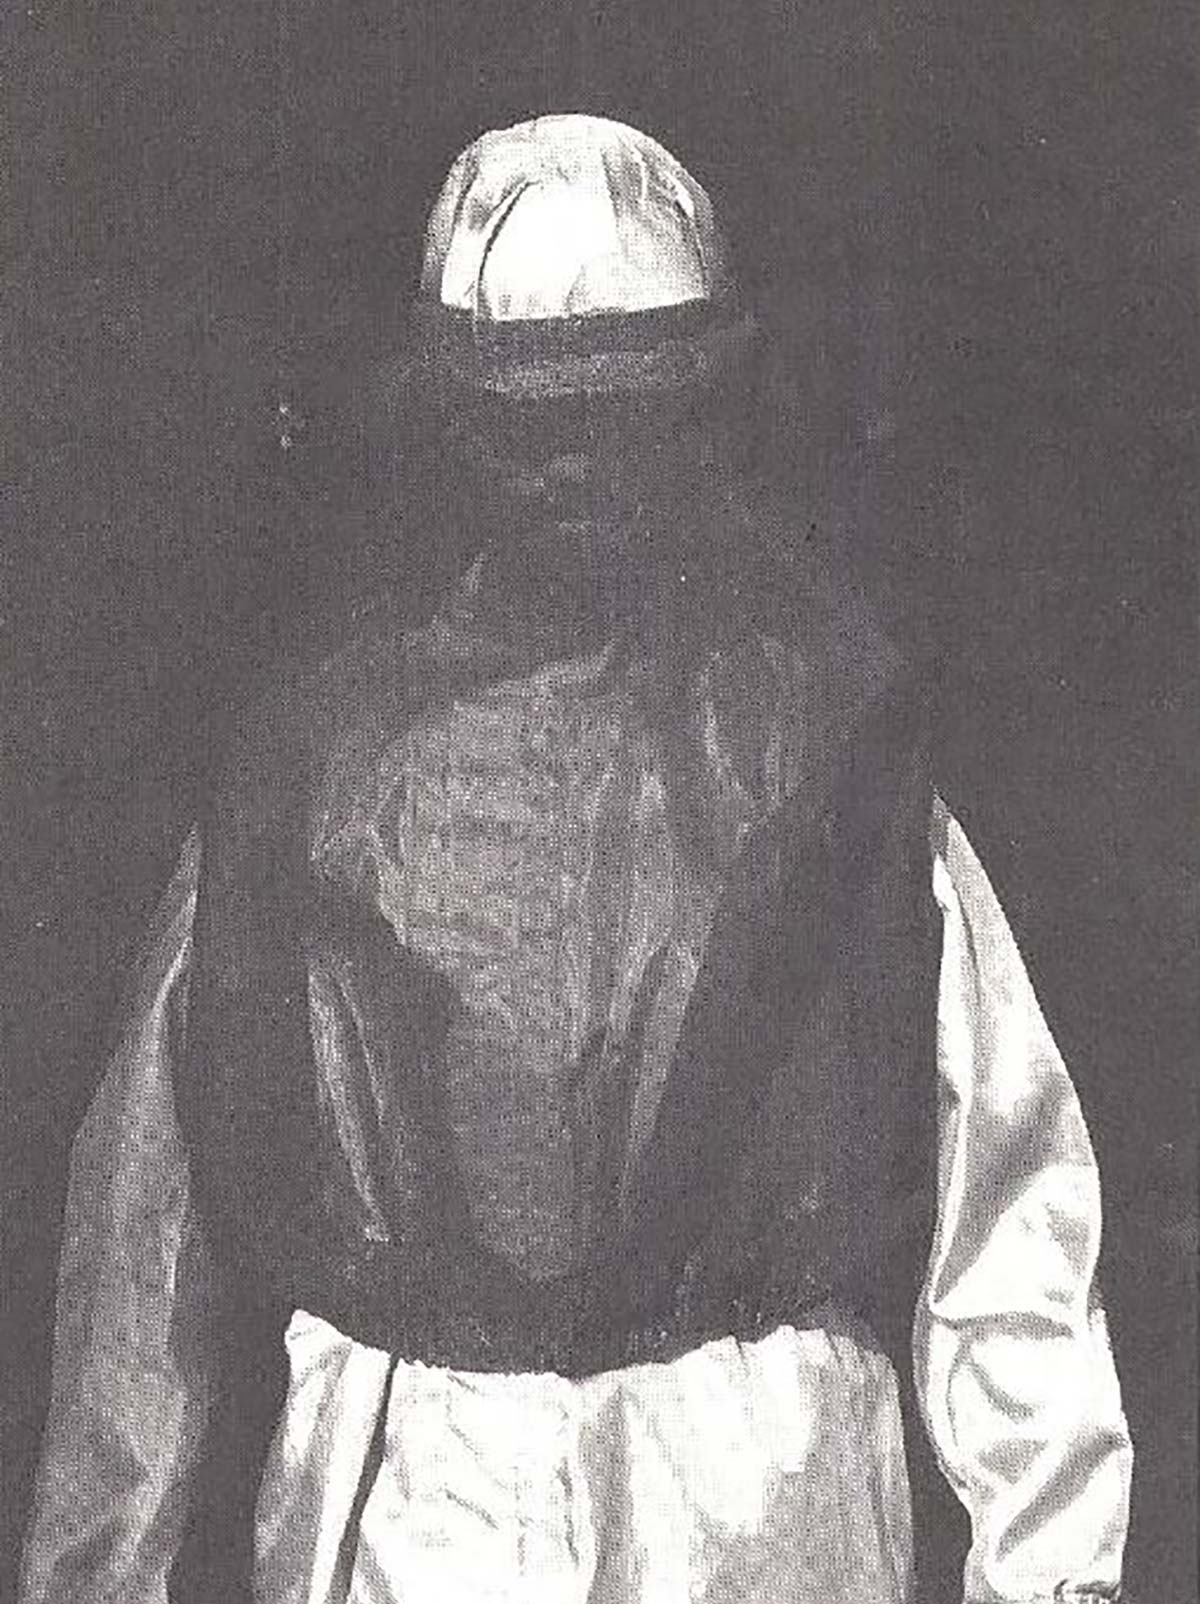 1982年，PTT推出了一种防止发射机电磁场的防护服。防护罩的黑色金属网格几乎不影响视线，“就像戴着太阳镜工作一样”。